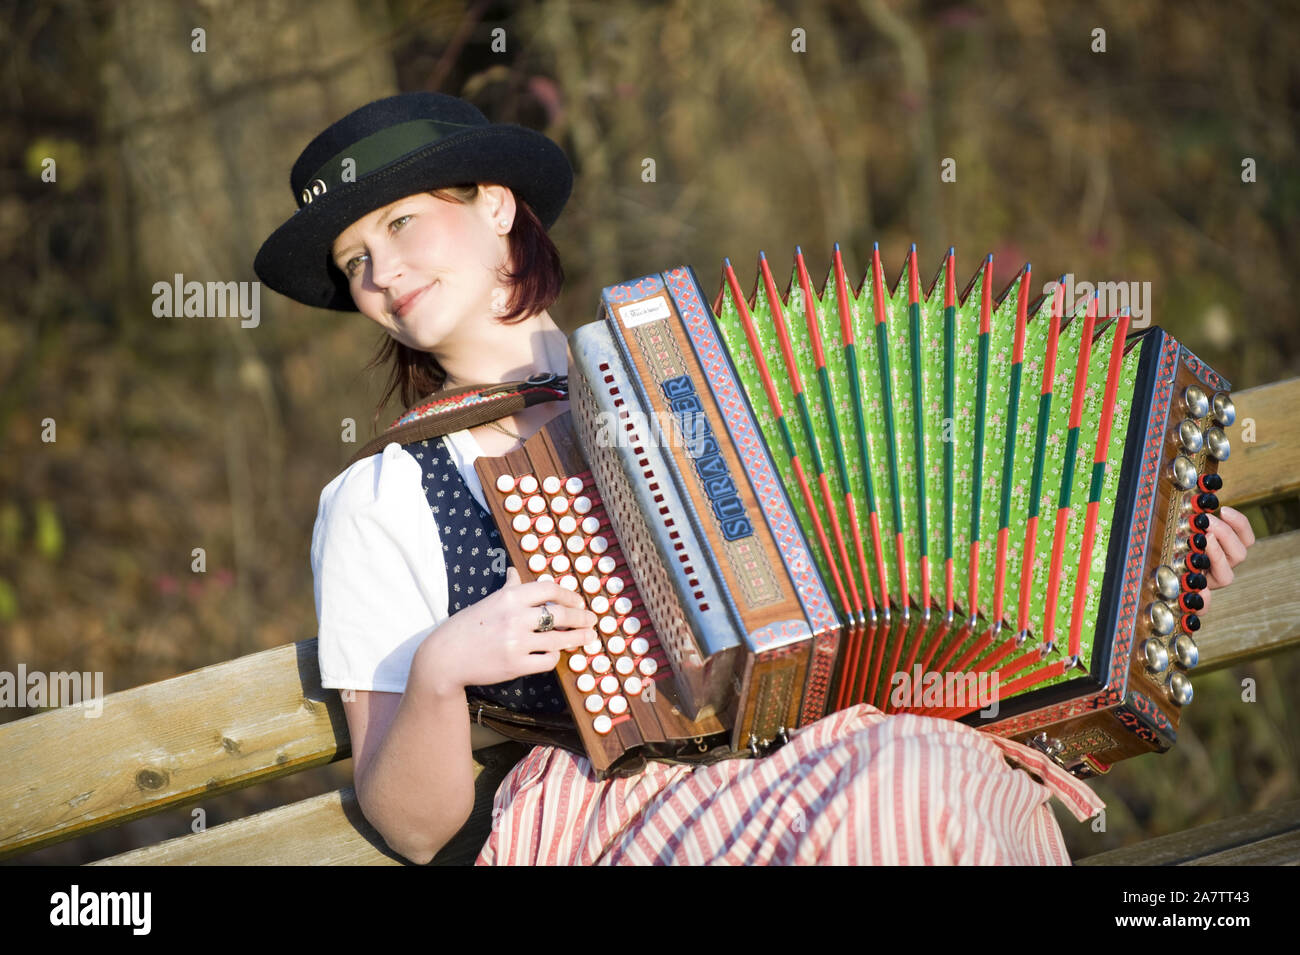 Junge Frau in Tracht mit steirischer Harmonika, Akkordeon, signor: Sì Foto Stock